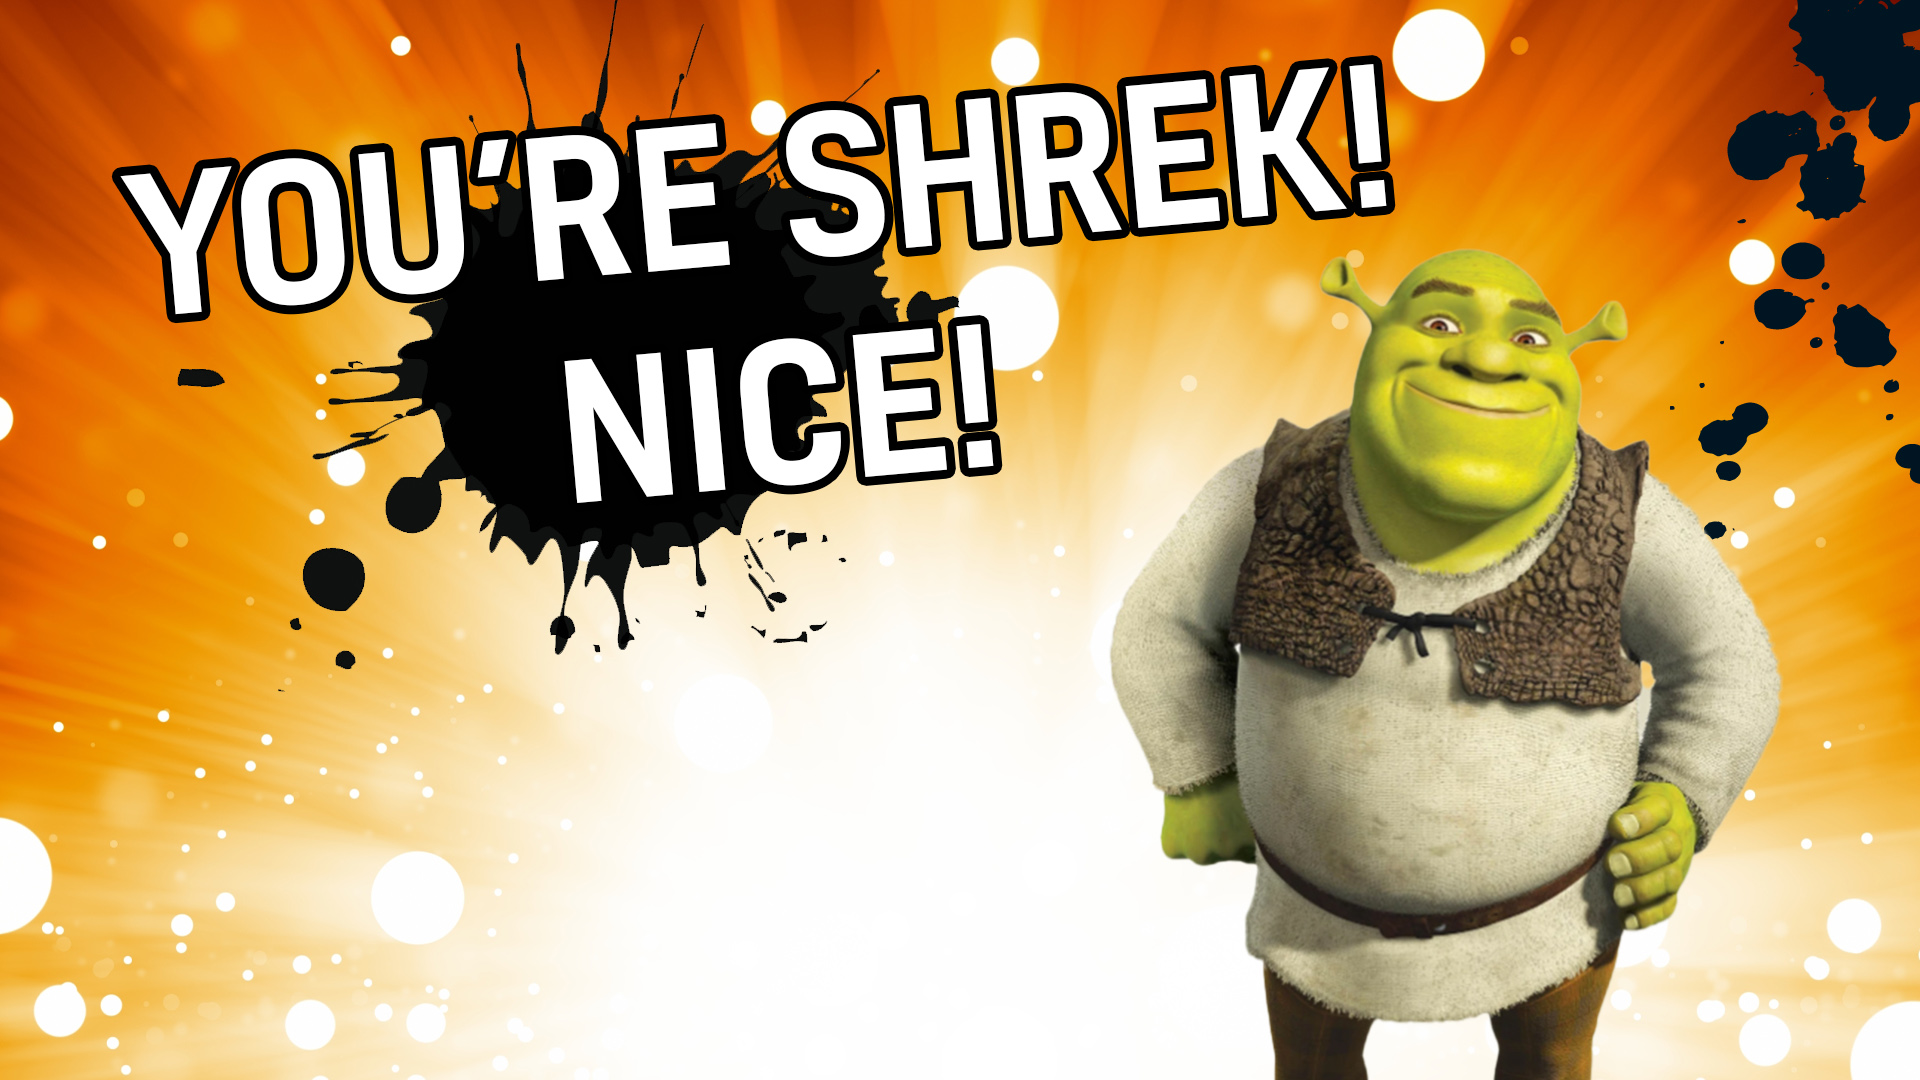 Result: Shrek